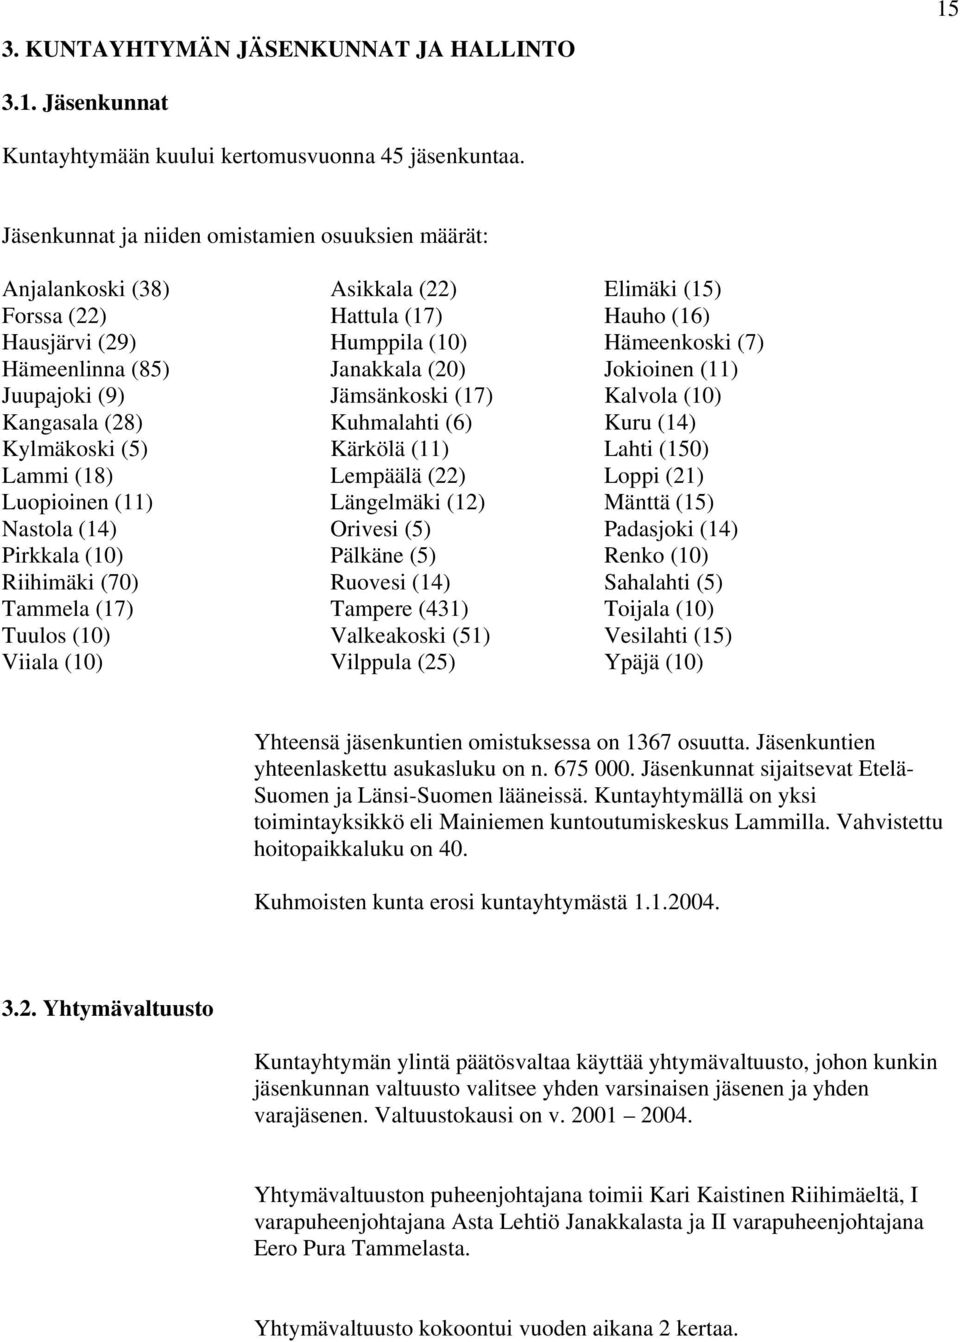 Janakkala (20) Jokioinen (11) Juupajoki (9) Jämsänkoski (17) Kalvola (10) Kangasala (28) Kuhmalahti (6) Kuru (14) Kylmäkoski (5) Kärkölä (11) Lahti (150) Lammi (18) Lempäälä (22) Loppi (21)